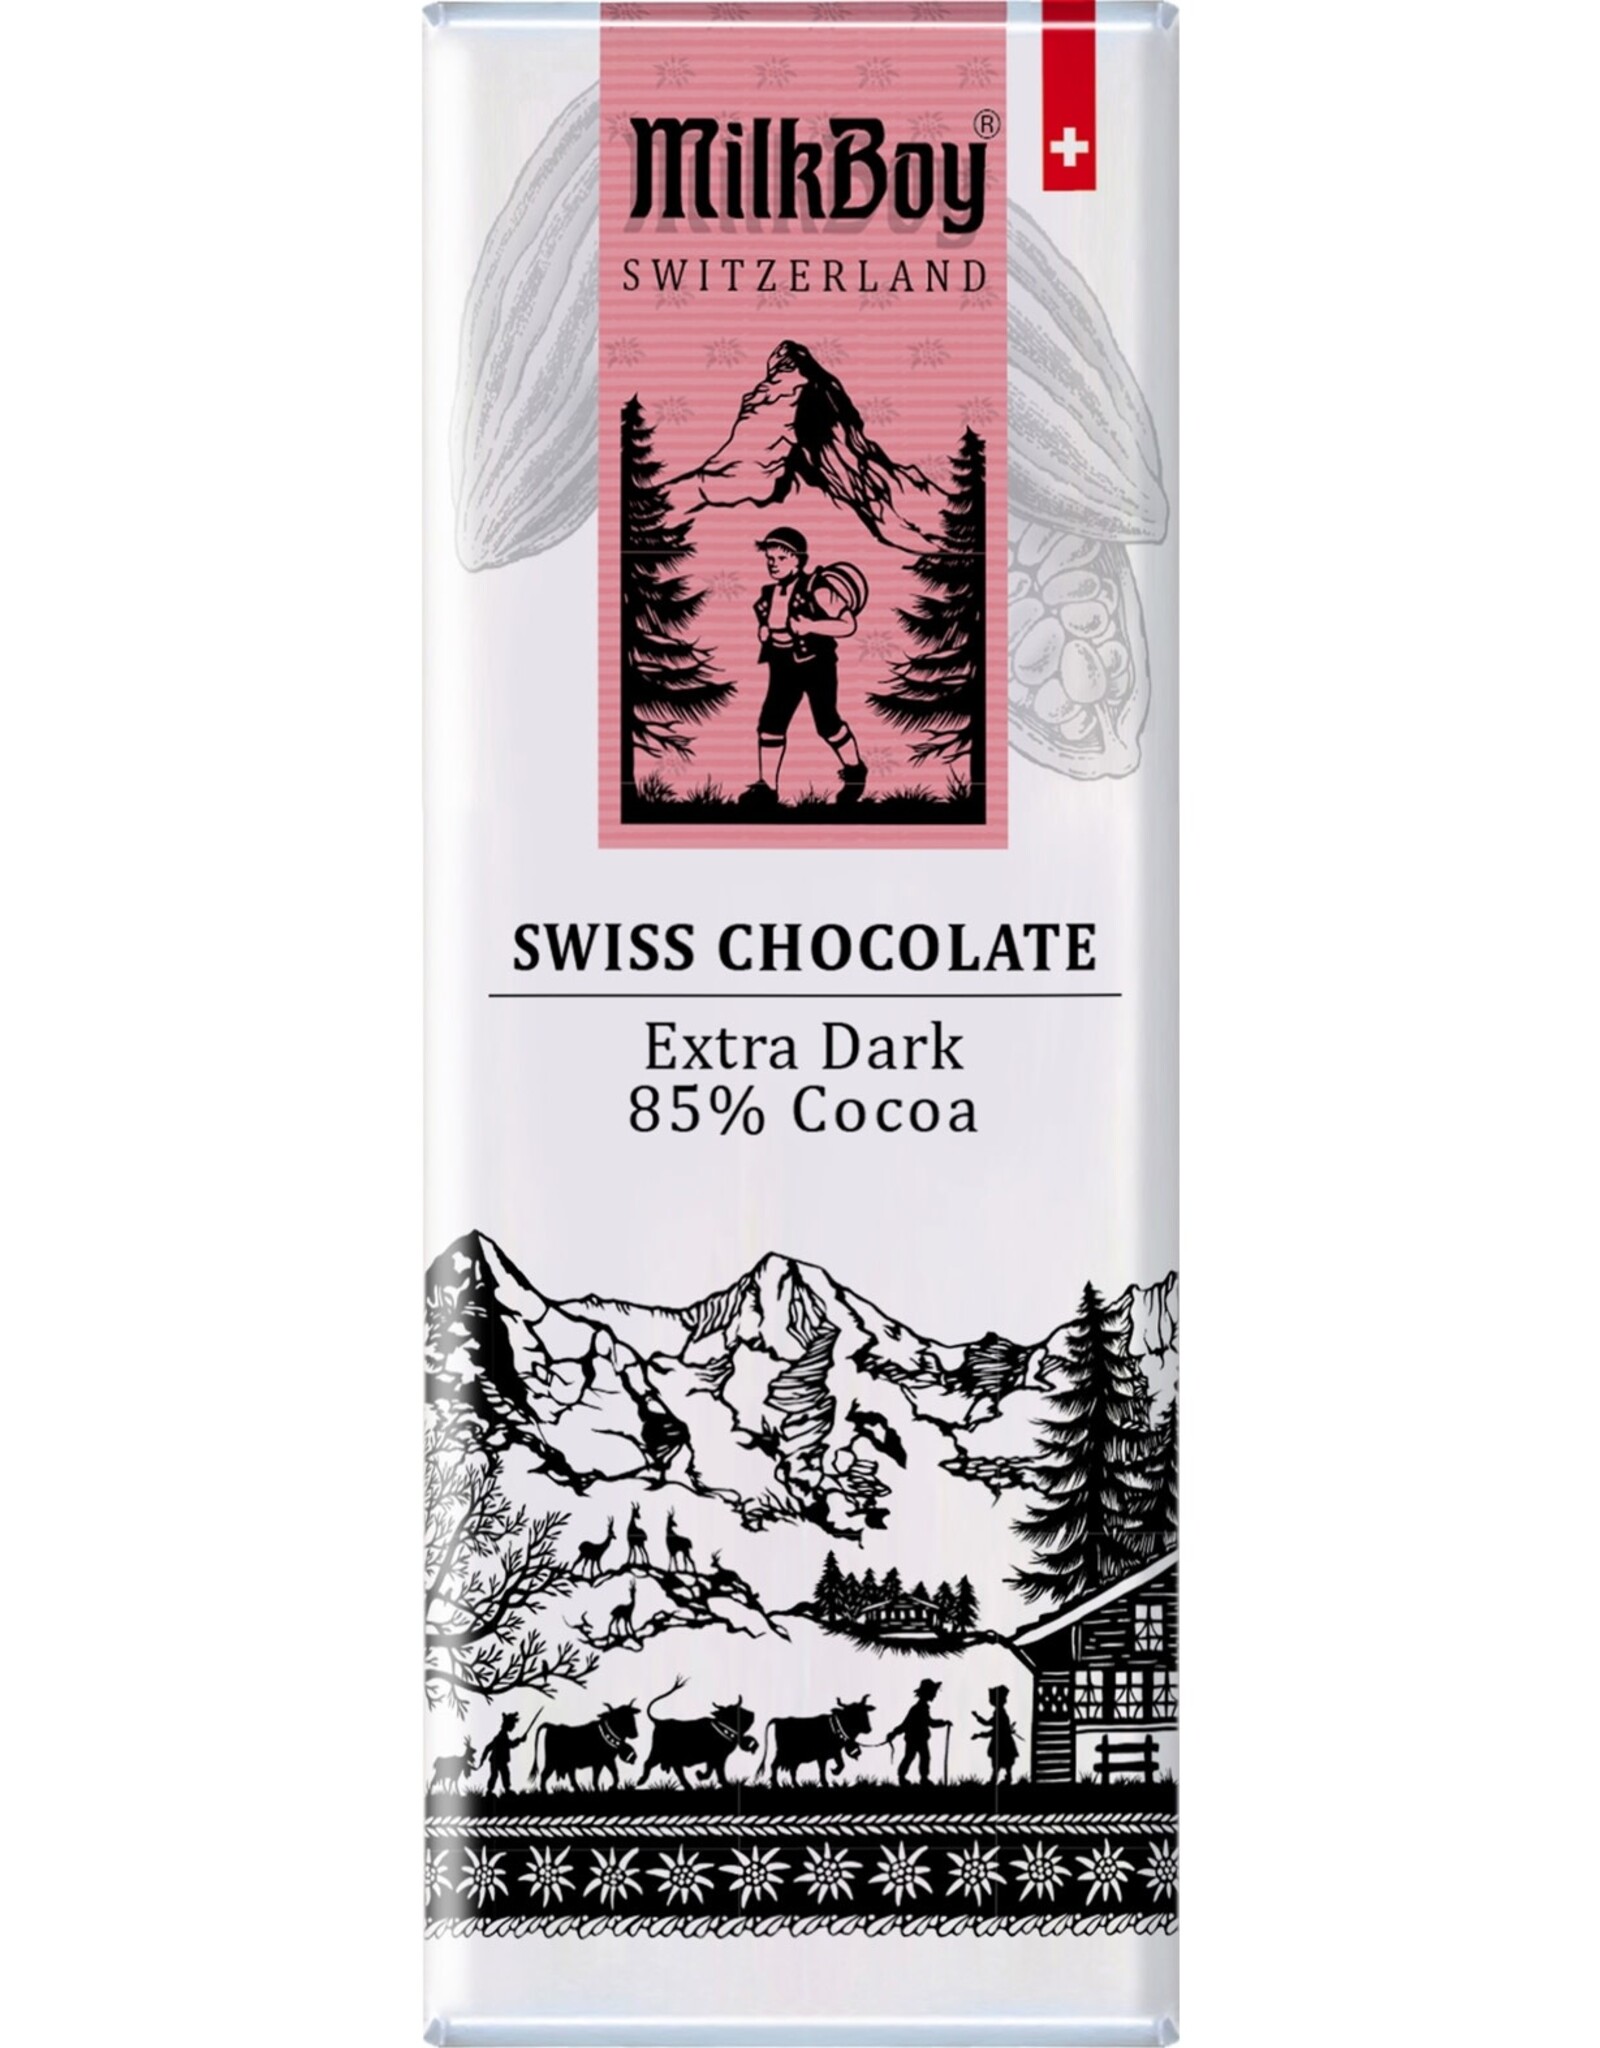 Milk Boy MilkBoy Extra Dark Swiss Chocolate 1.4oz SNACK SIZE